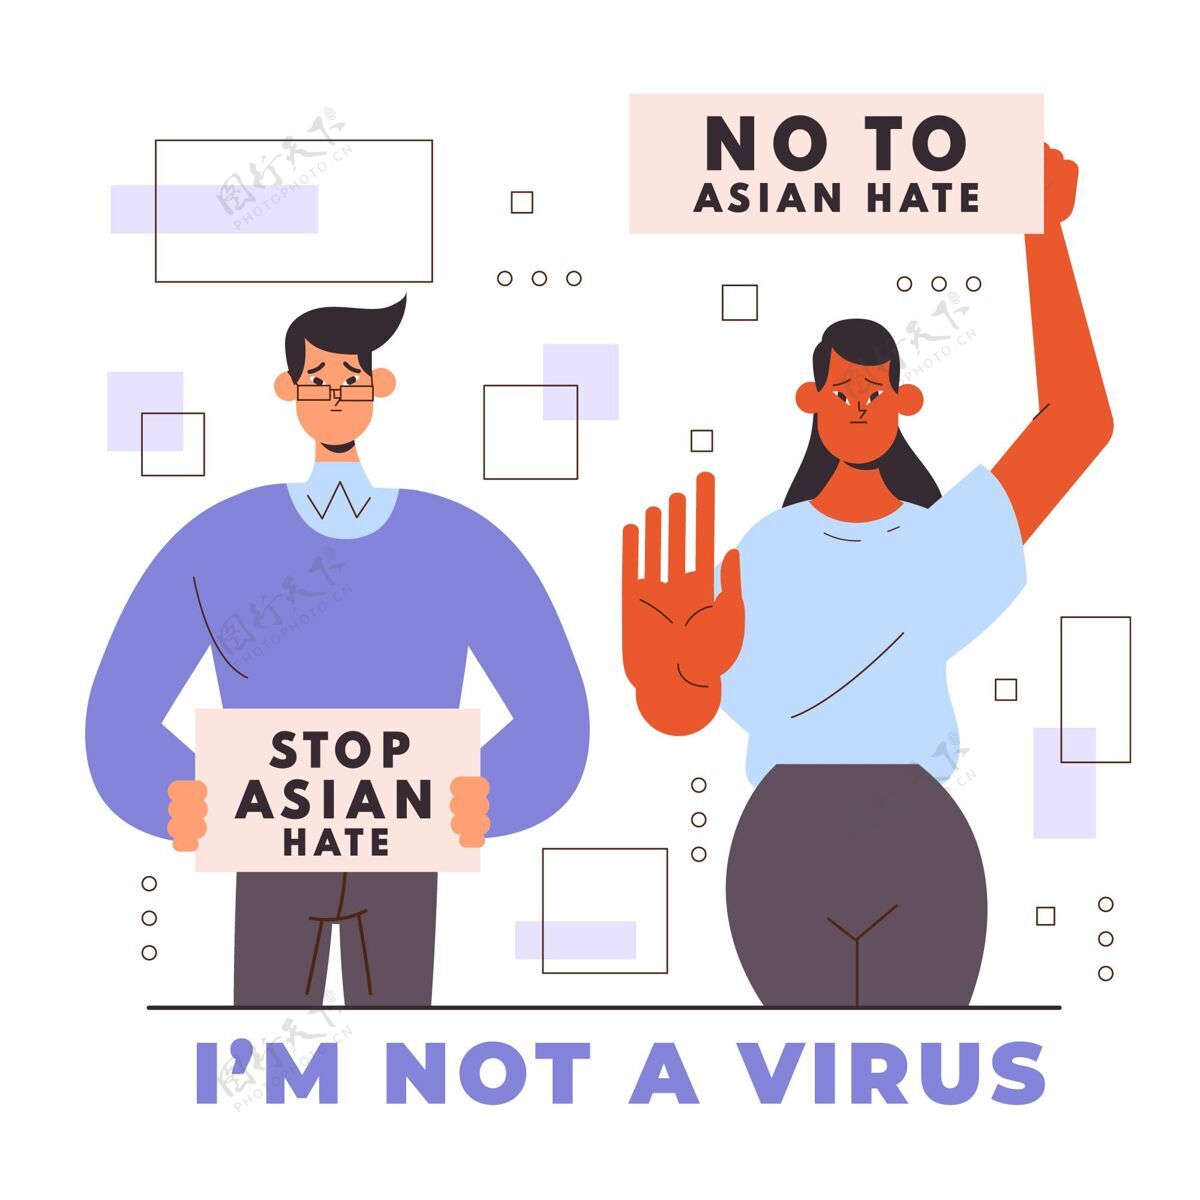 流行病平停亚洲人讨厌的插图亚洲人仇恨压迫感染